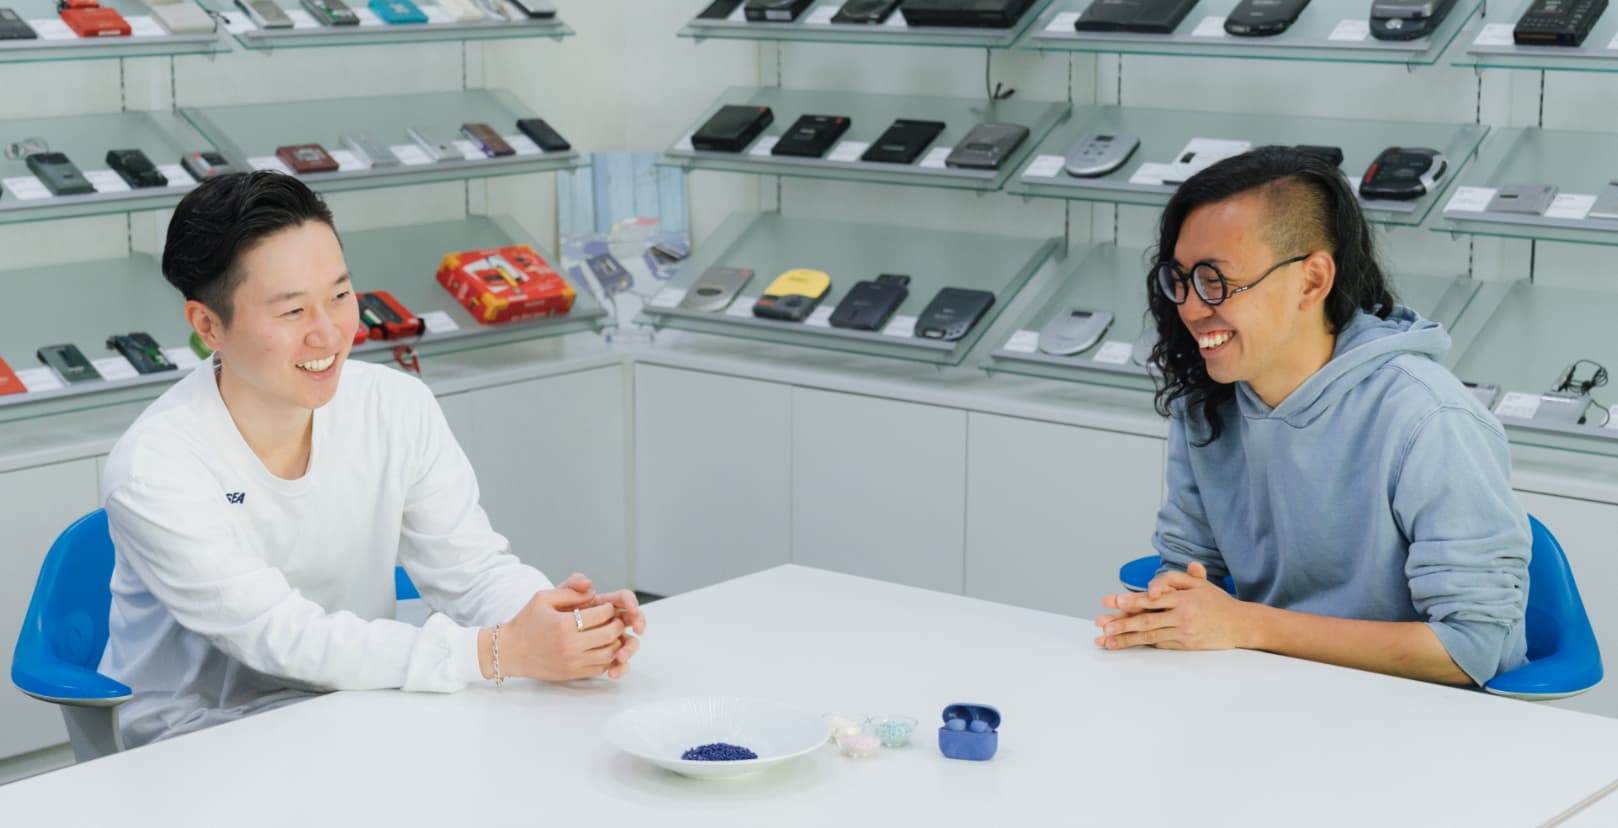 本坊健一郎さんと加藤功将さんが、再生プラスチックを用いた素材を手元に、向かい合って座り、視線は合わせずにお互い笑っている写真。